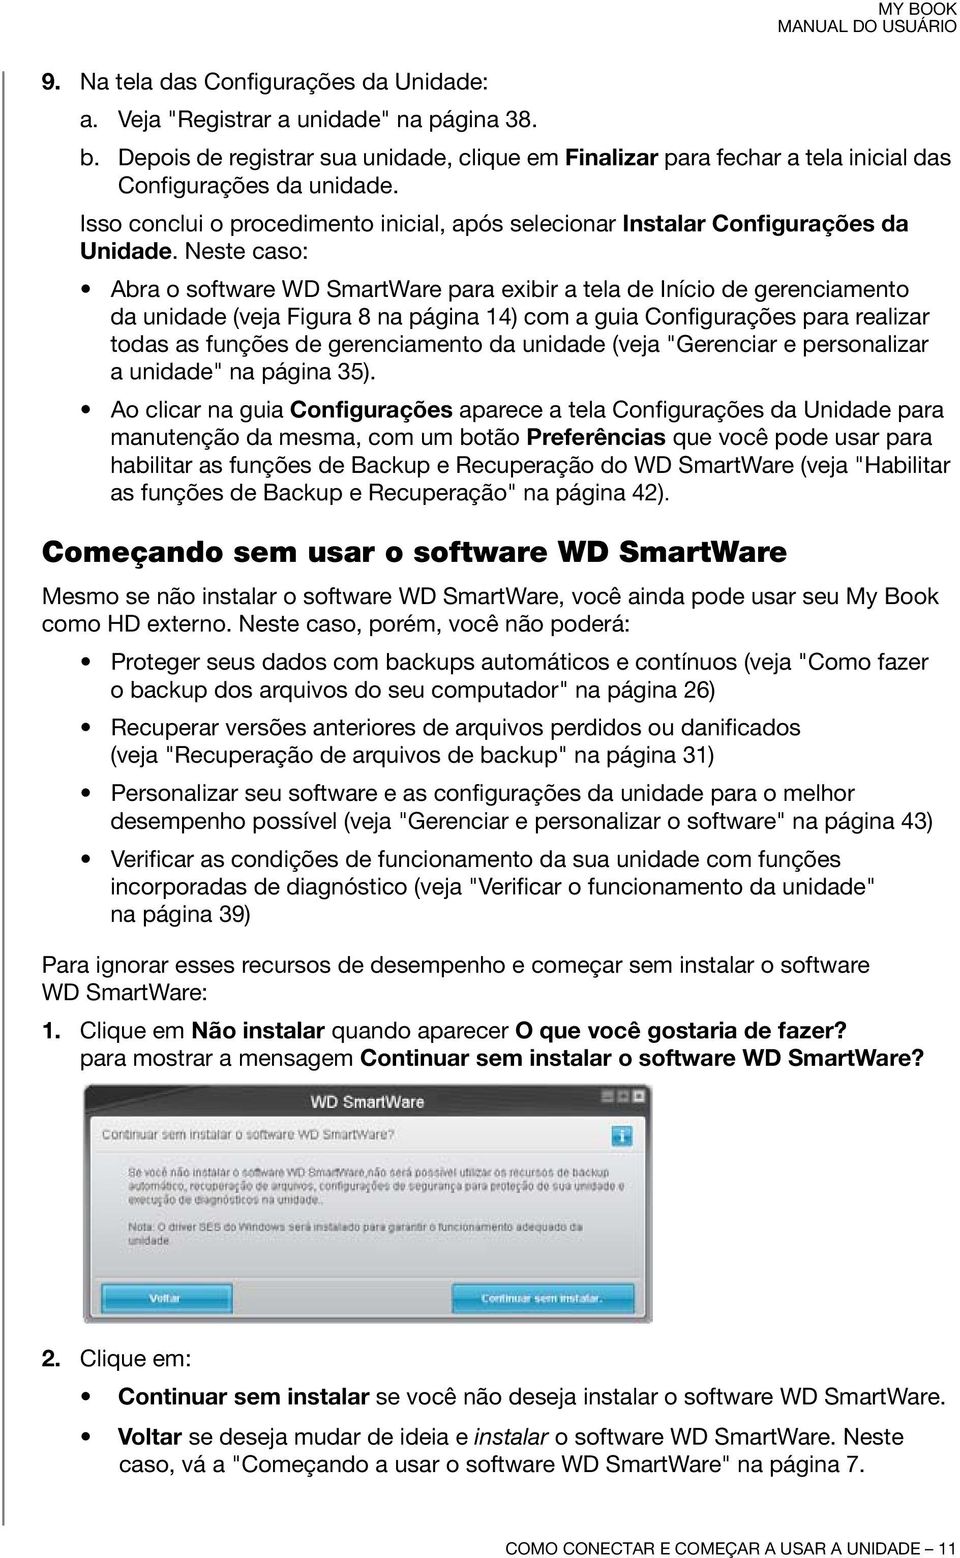 Neste caso: Abra o software WD SmartWare para exibir a tela de Início de gerenciamento da unidade (veja Figura 8 na página 14) com a guia Configurações para realizar todas as funções de gerenciamento